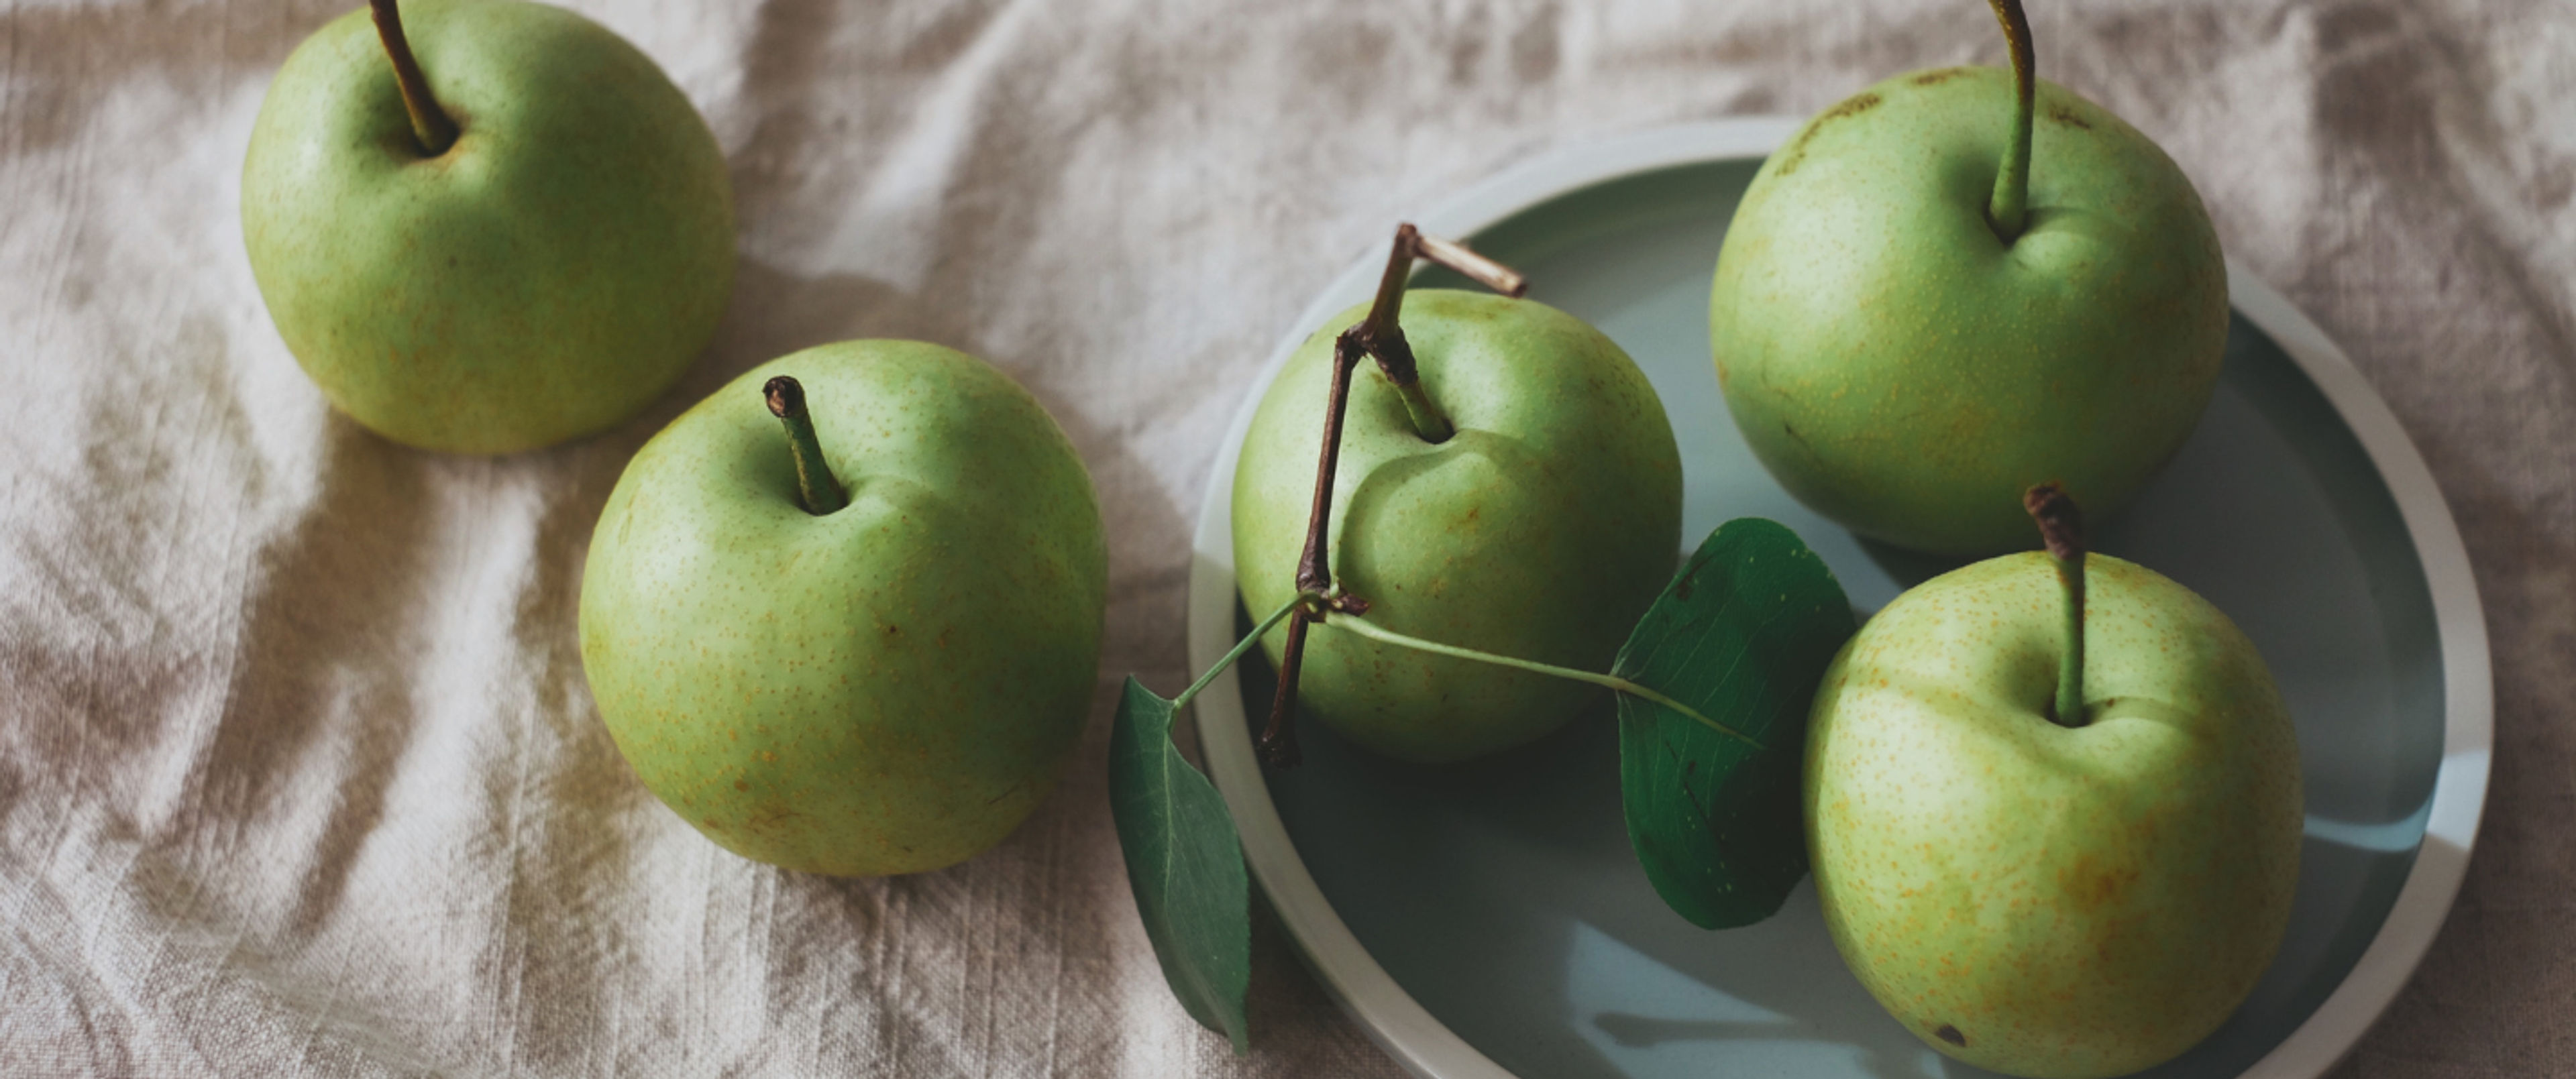 5 vitaminer som finns i äpplen